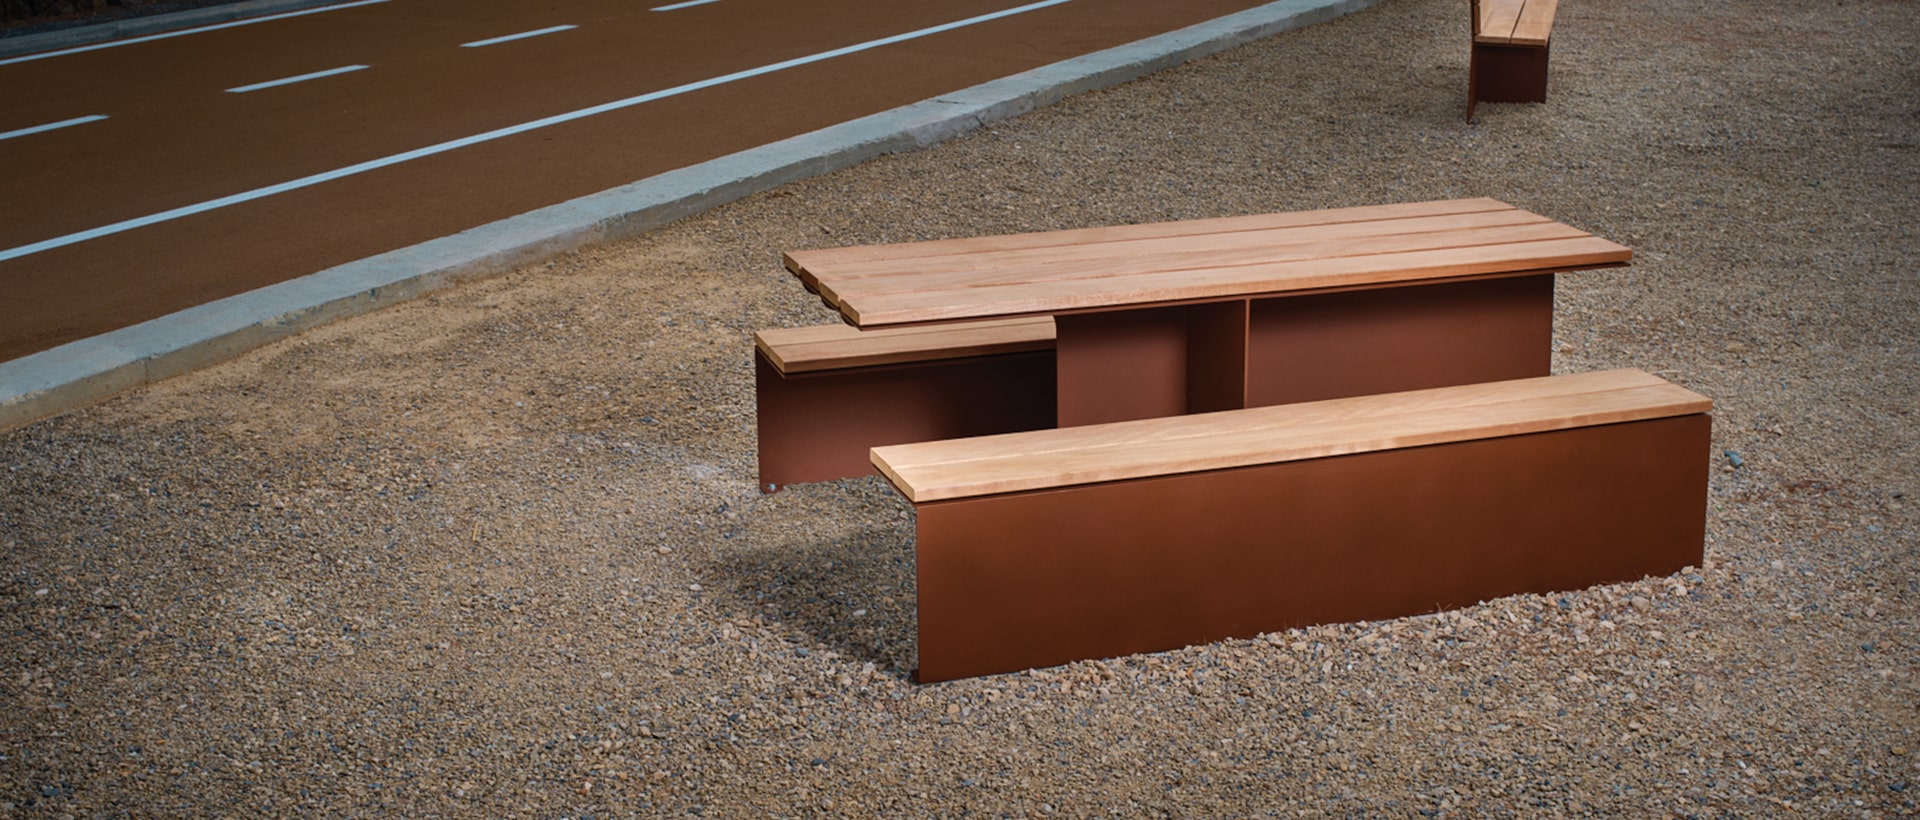 acier bois mobilier urbain cyria table de pique nique 1920x820 3